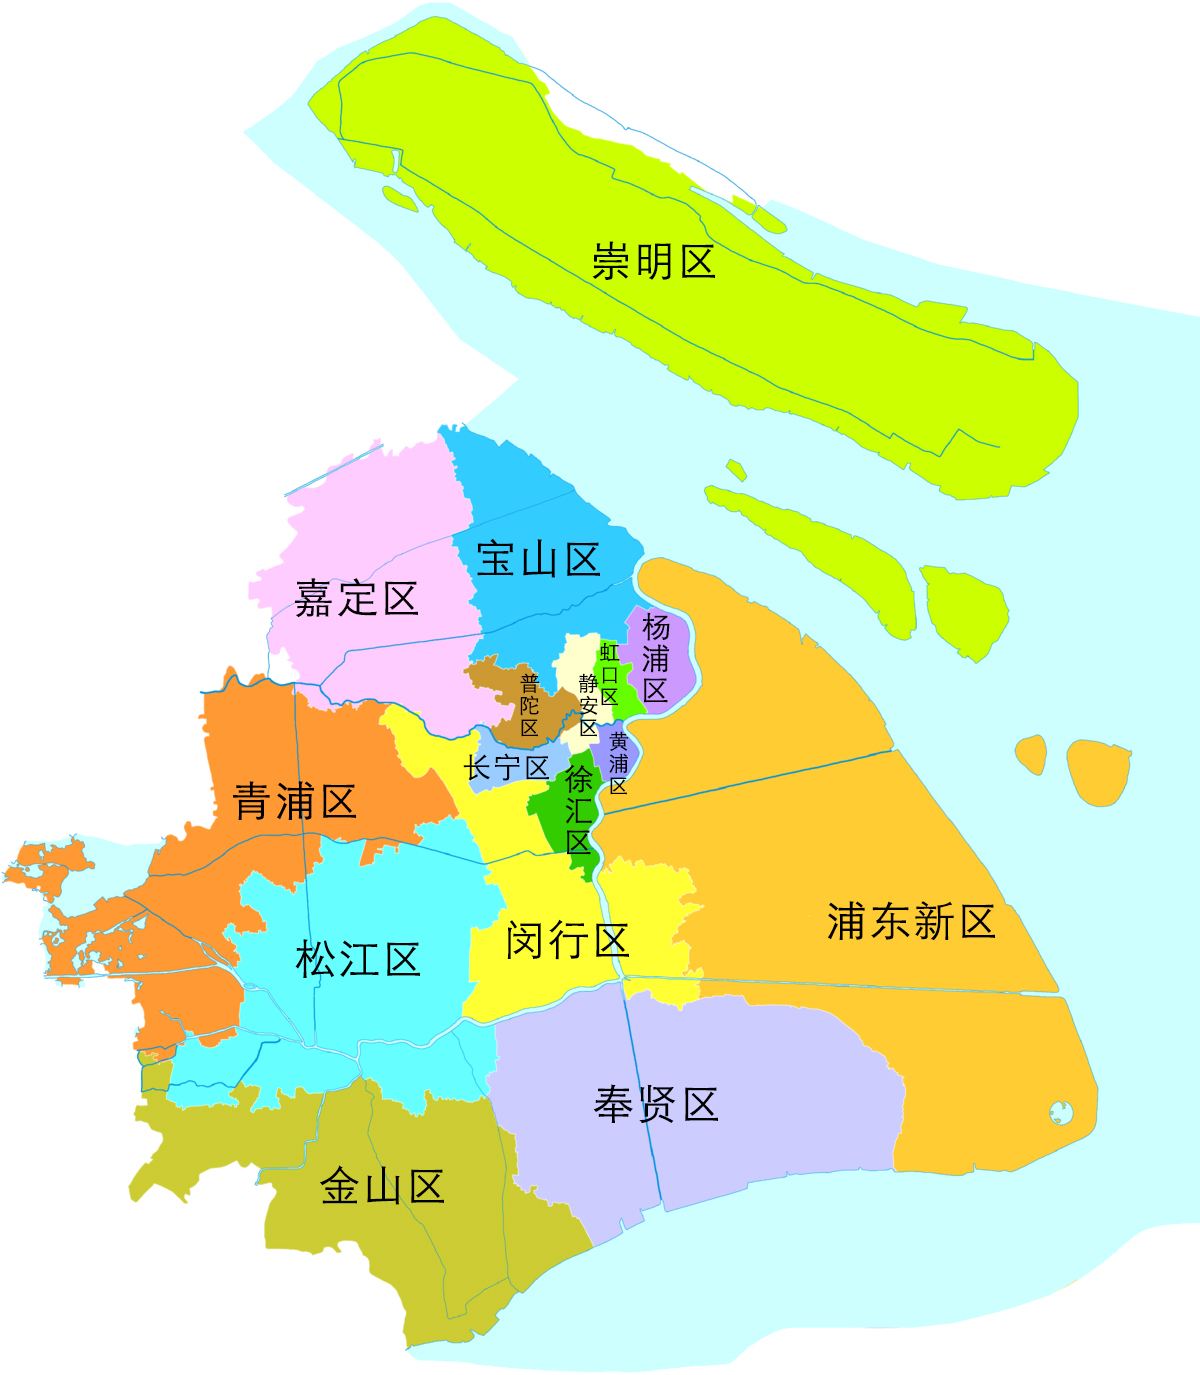 上海市各区划分图2021图片